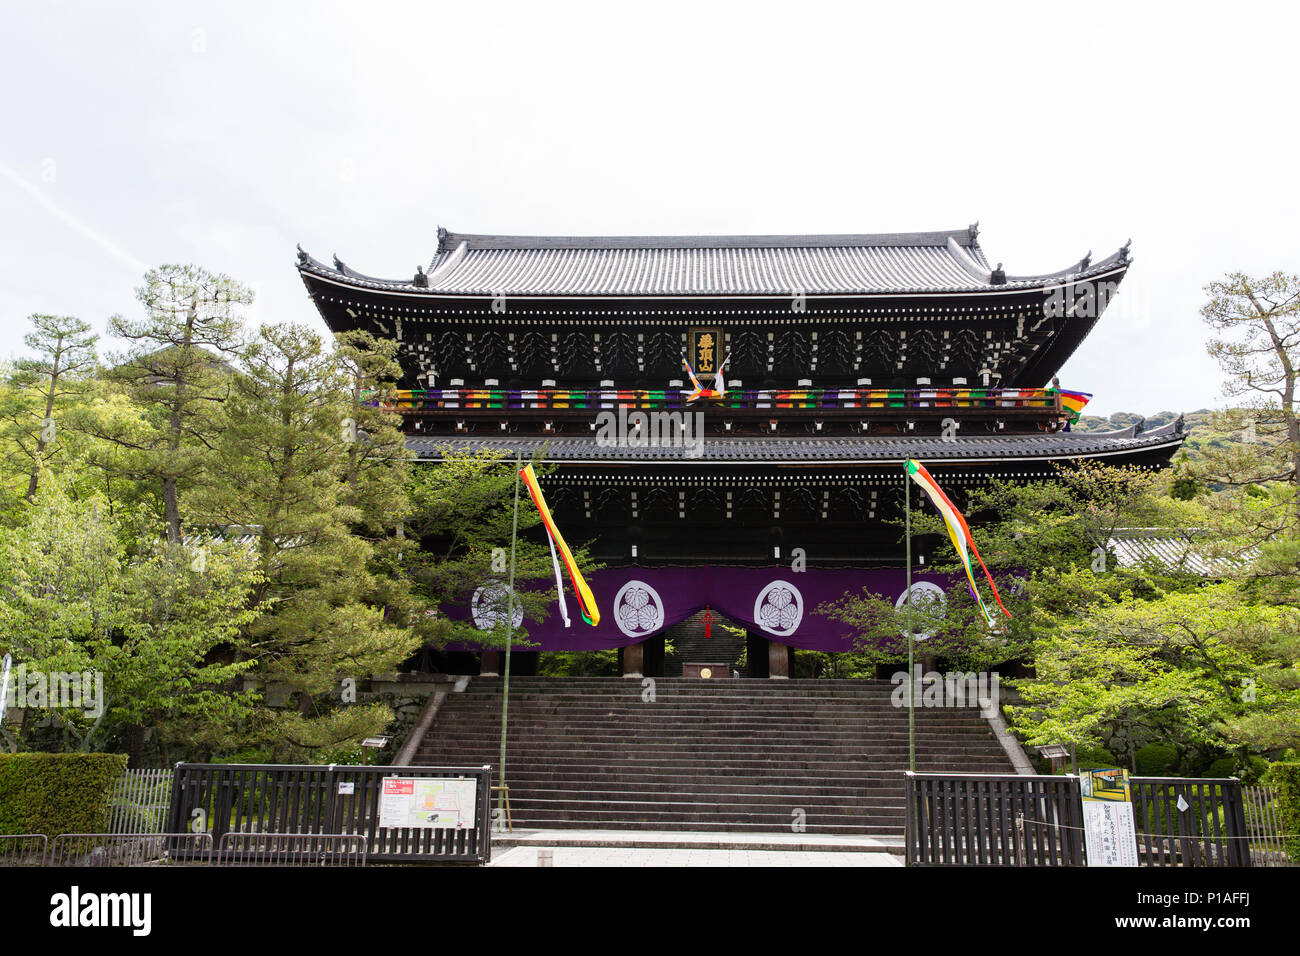 La gran puerta principal, "anmon ,', entrada a la Chion-en el complejo de templos budistas en Kyoto, Japón Foto de stock